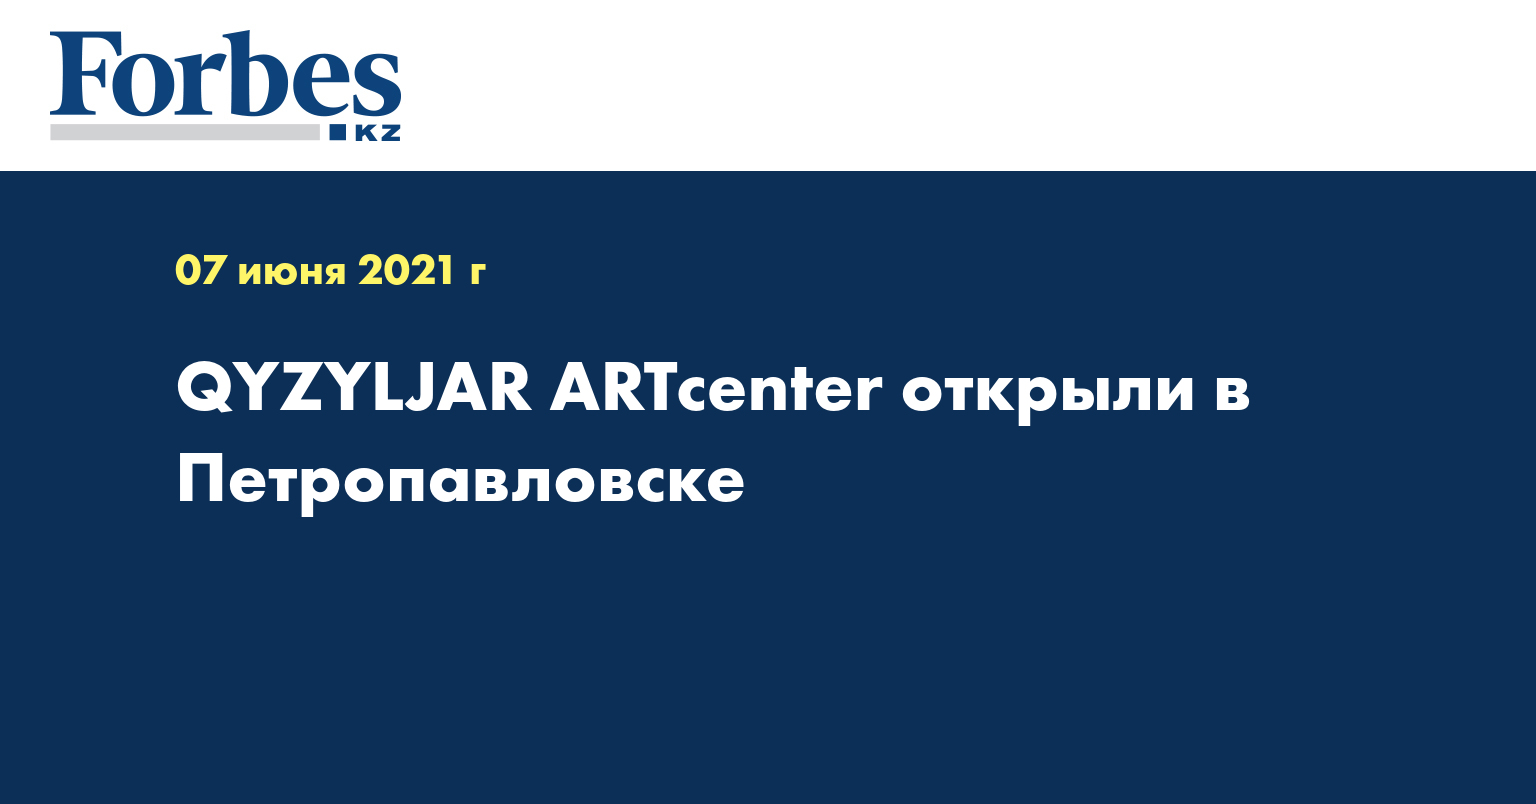 QYZYLJAR ARTcenter открыли в Петропавловске